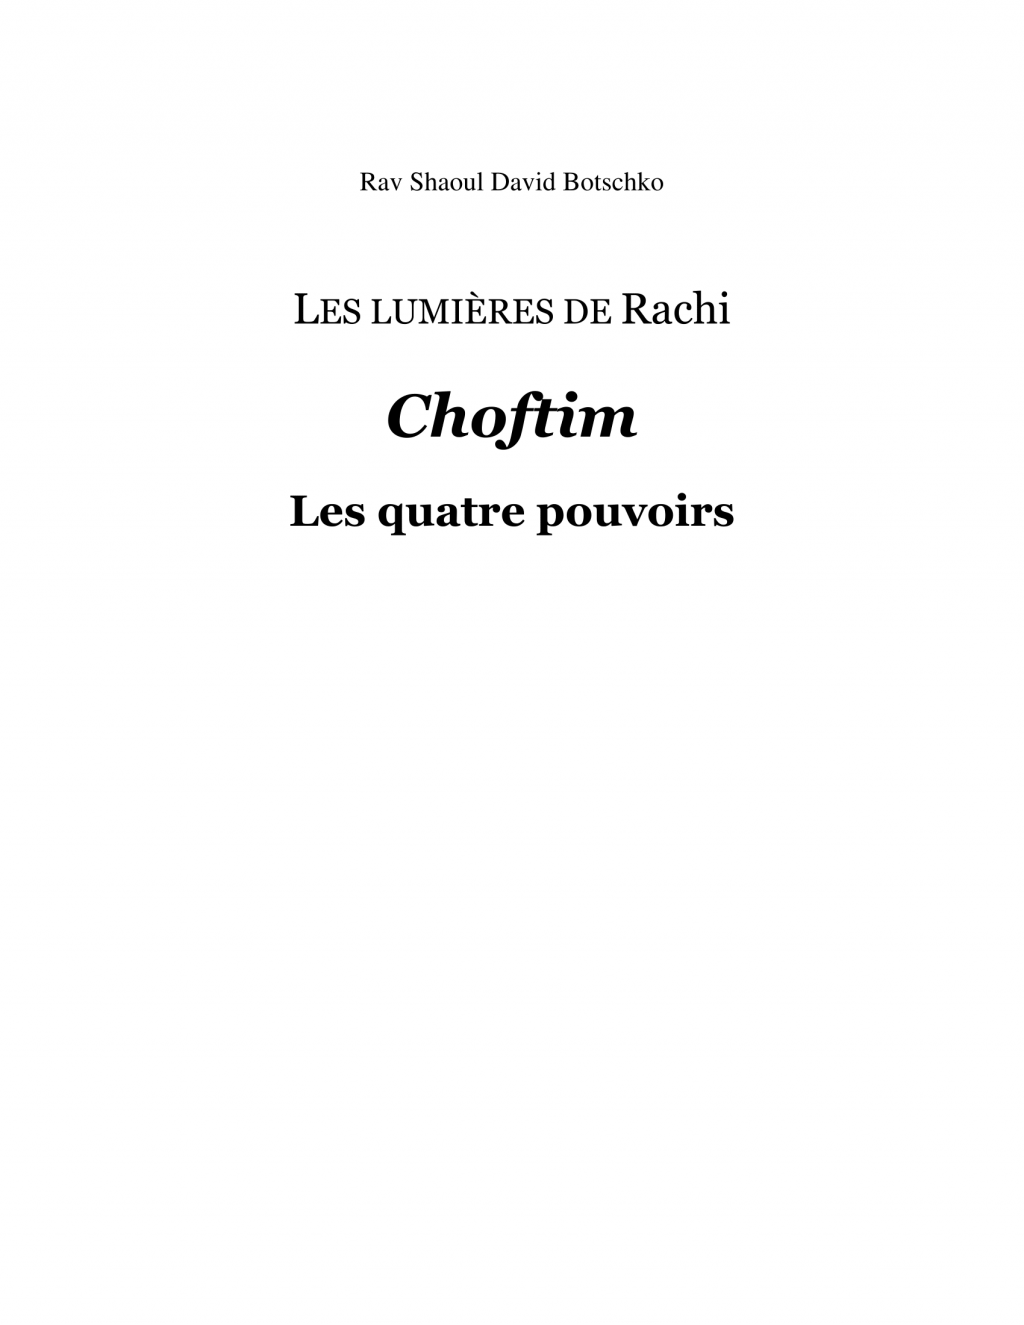 Couverture du livre Les lumières de Rachi - Choftim